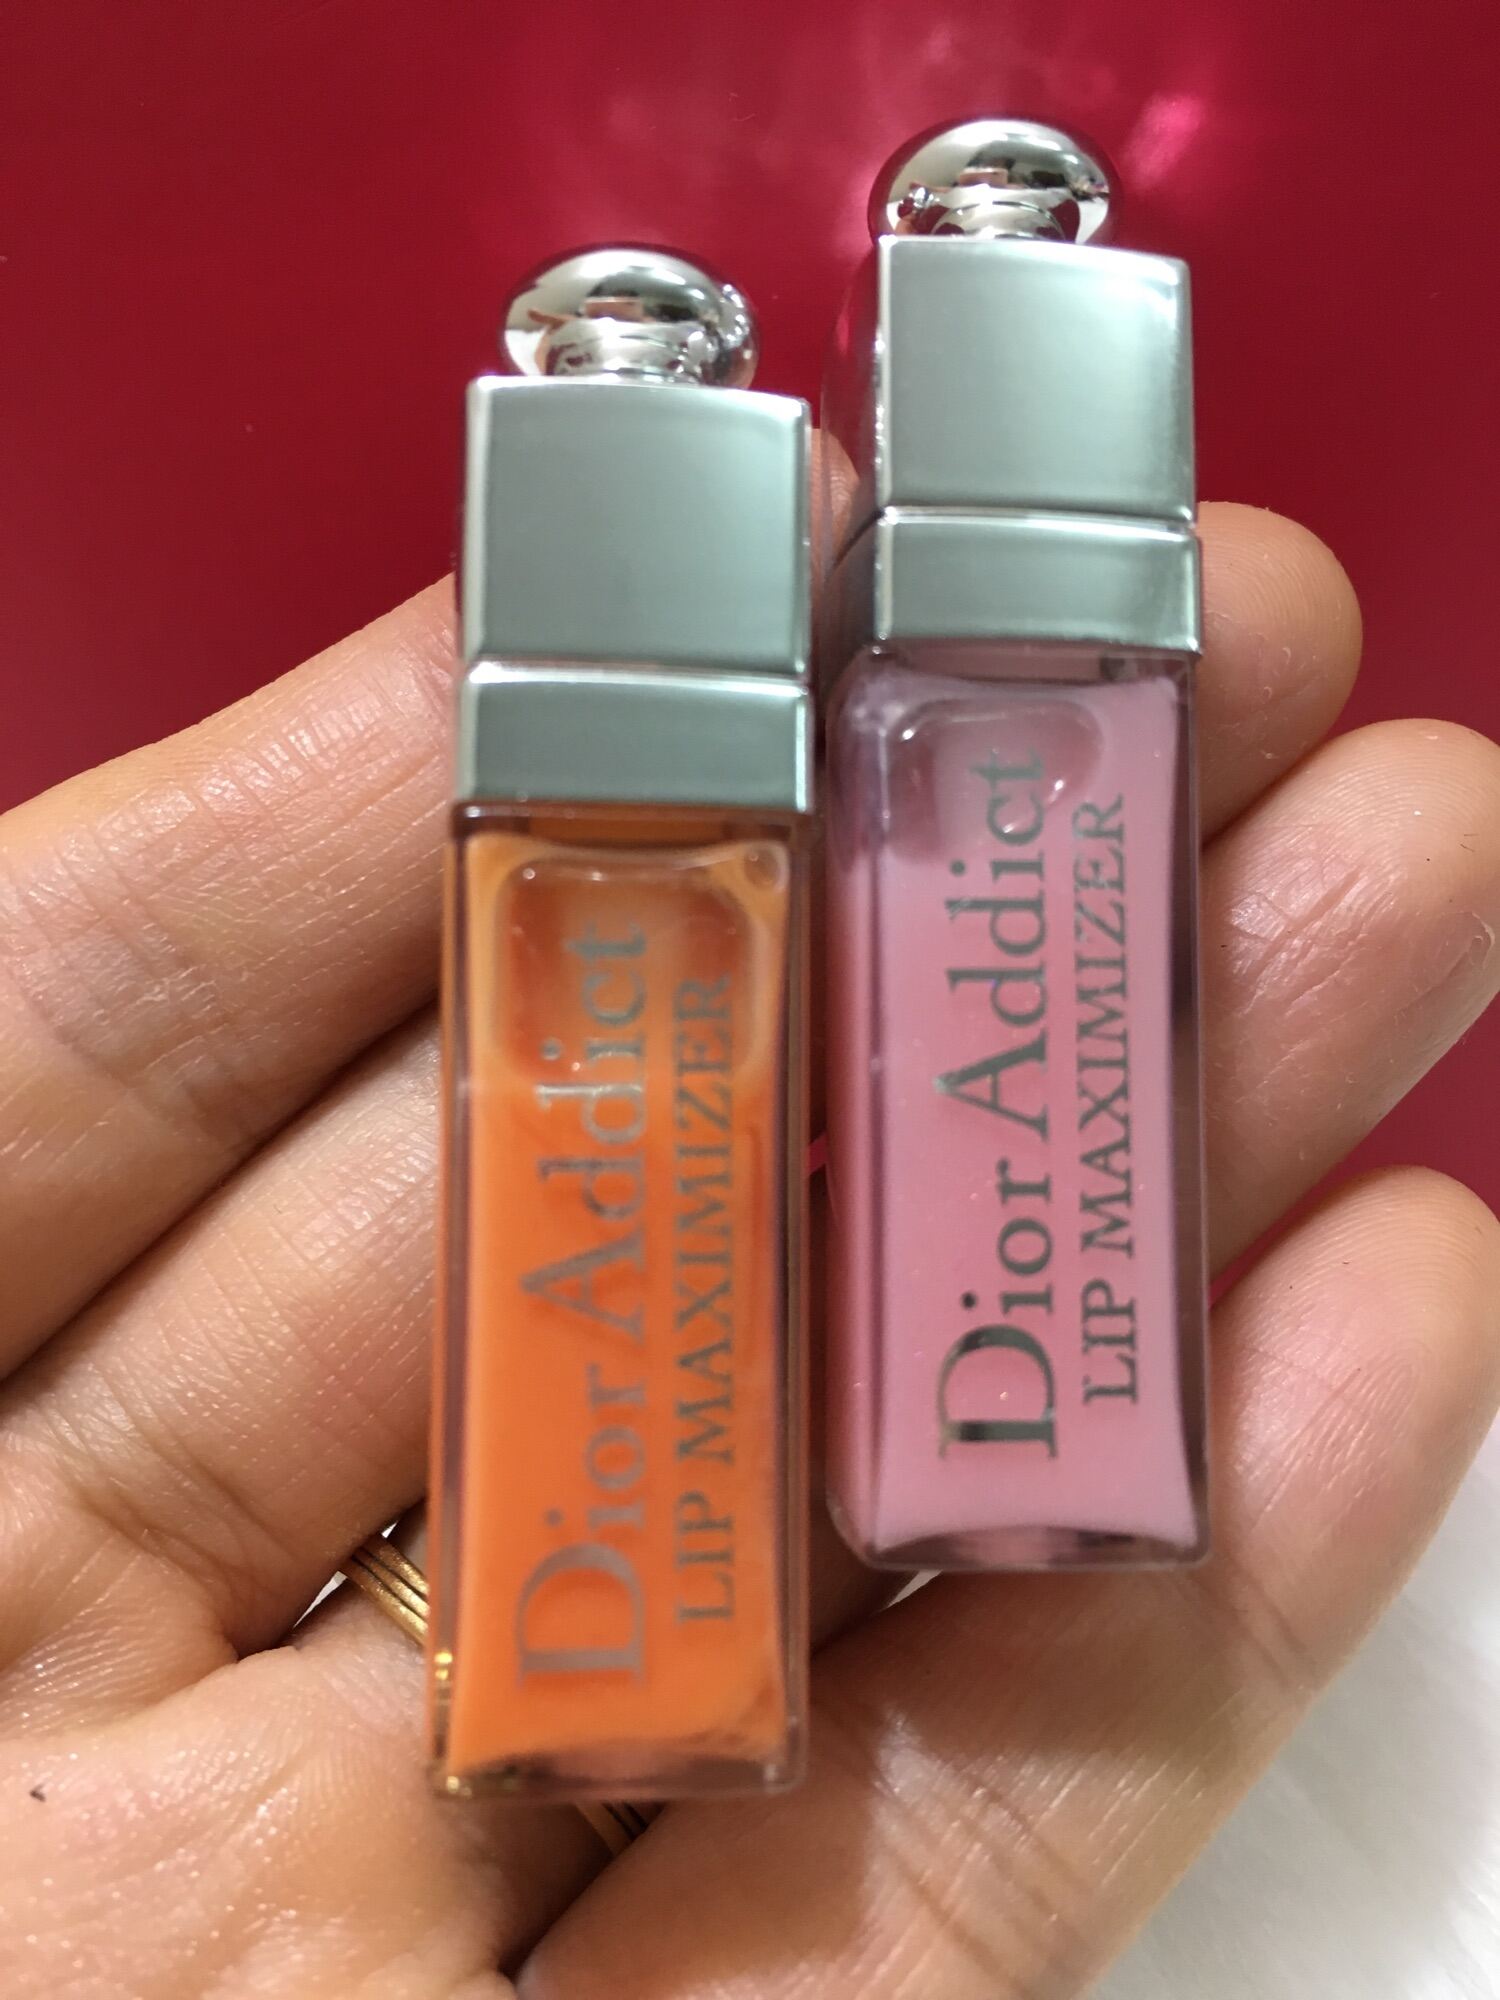 Son dưỡng môi Dior maximizer cao cấp mini 2ml chuẩn auth thumbnail